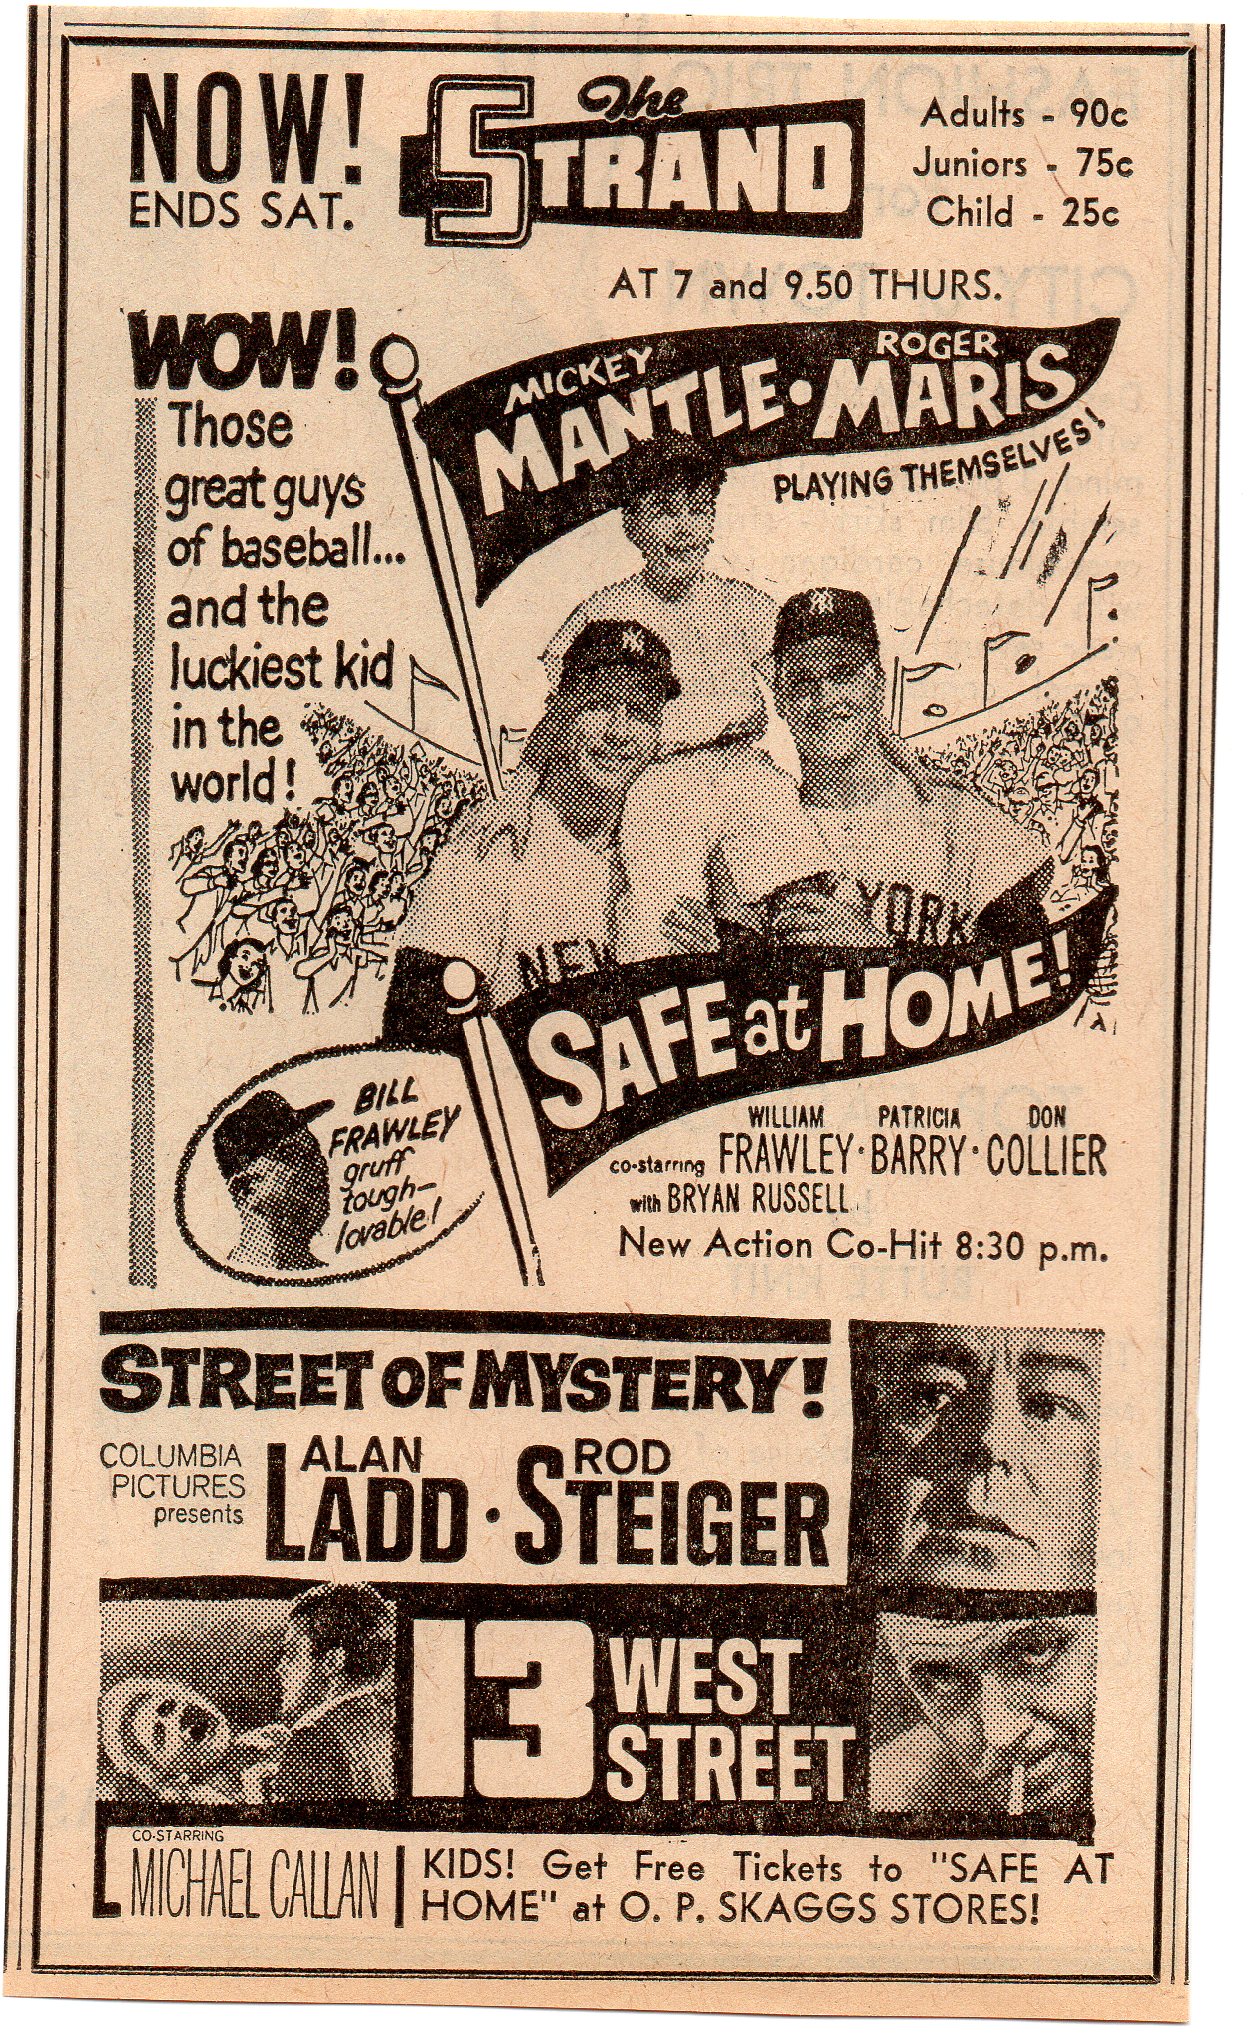 1962 skaggs stores newspaper ad, western u.s.a.